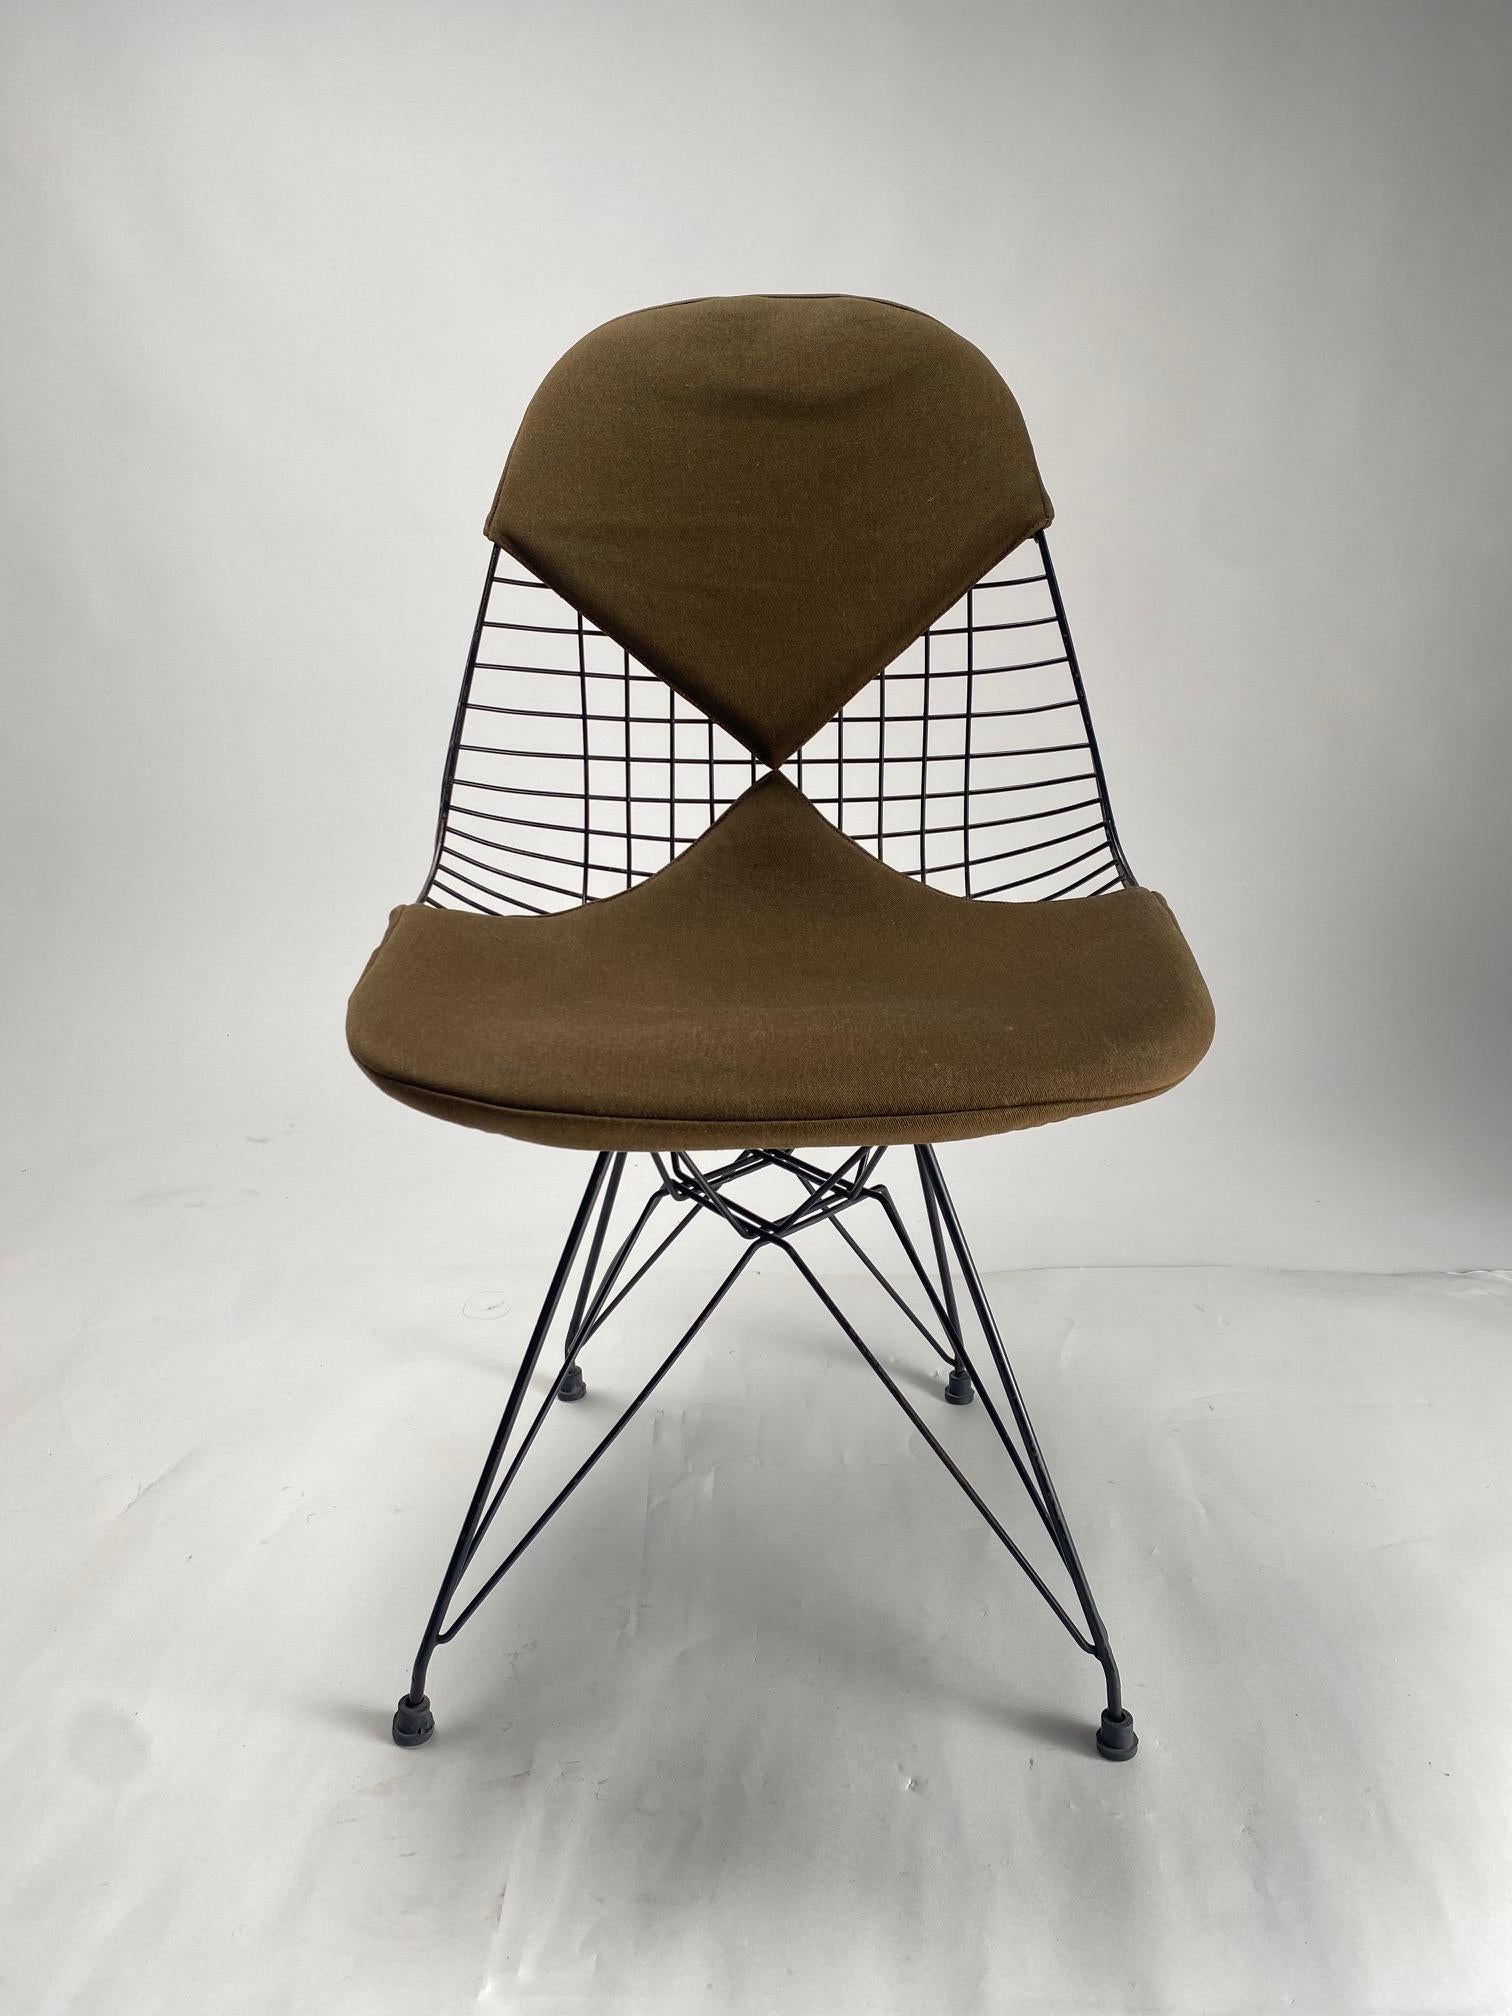 Superbes chaises filaires Eames Classic Brown sur une base eiffel noire avec la housse bikini pour Herman Miller. 

Il s'agit d'une véritable icône du design américain du milieu du siècle, proposée ici dans l'une de ses toutes premières versions.